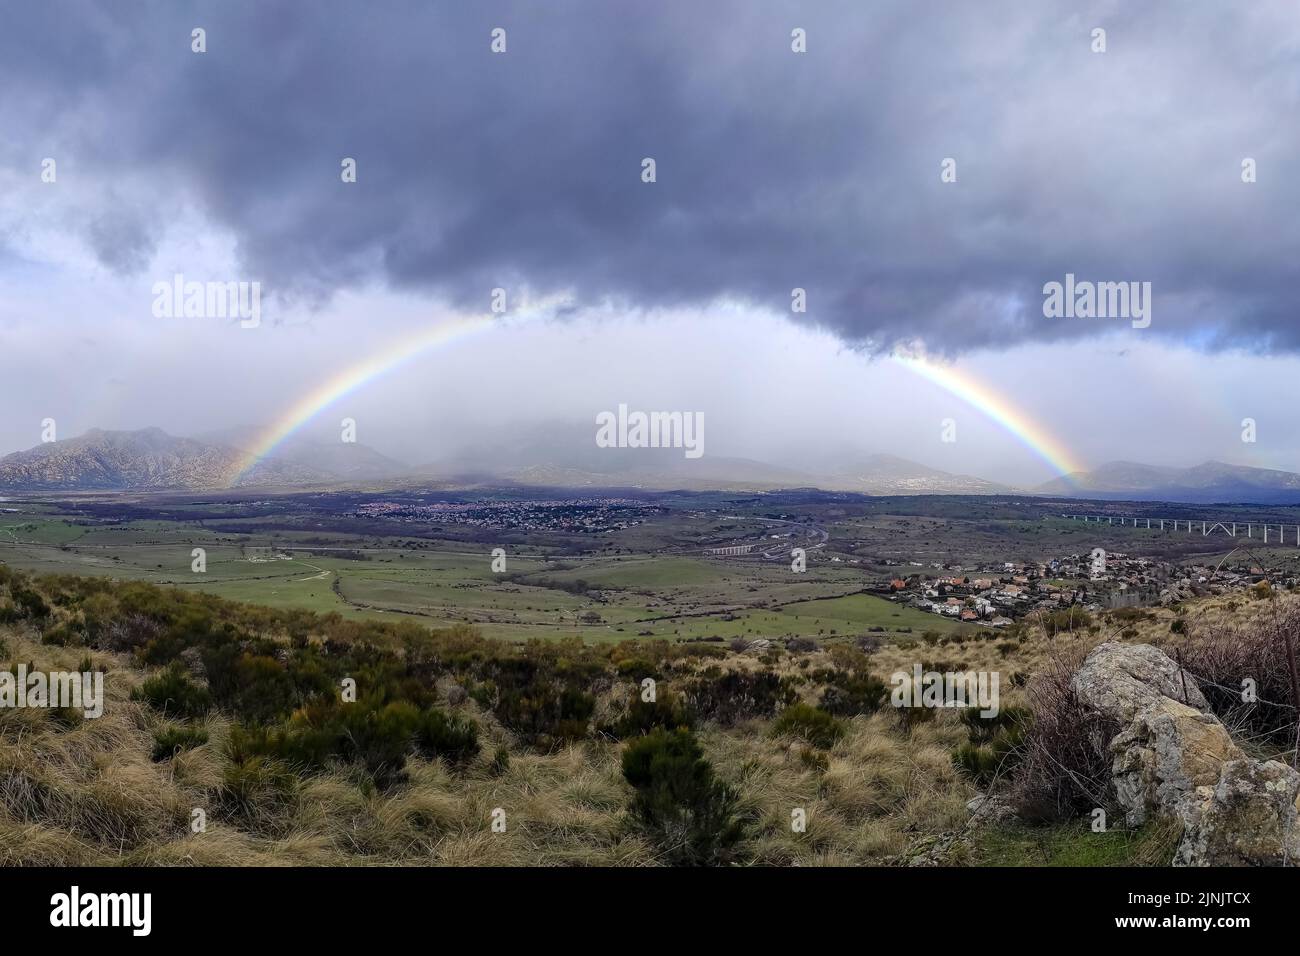 Spettacolare arcobaleno sulle montagne di Madrid, cielo con nuvole di pioggia scure. Spagna. Foto Stock